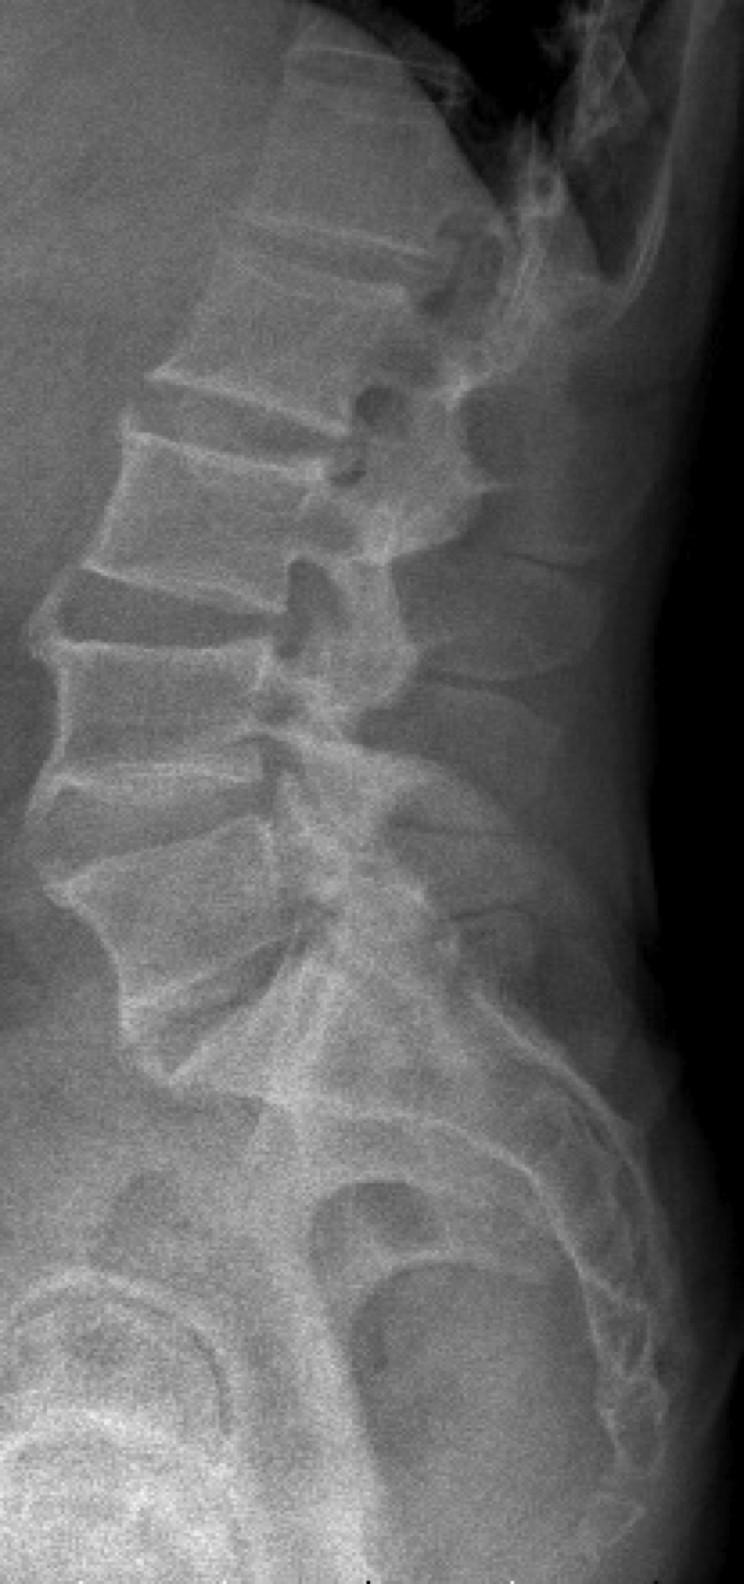 Kurzbeschreibung: Dies ist ein Röntgenbild einer LWS mit osteochondrotischen Veränderungen mit teils durchgehenden Anbauten im Bereich L3-S1, sowie